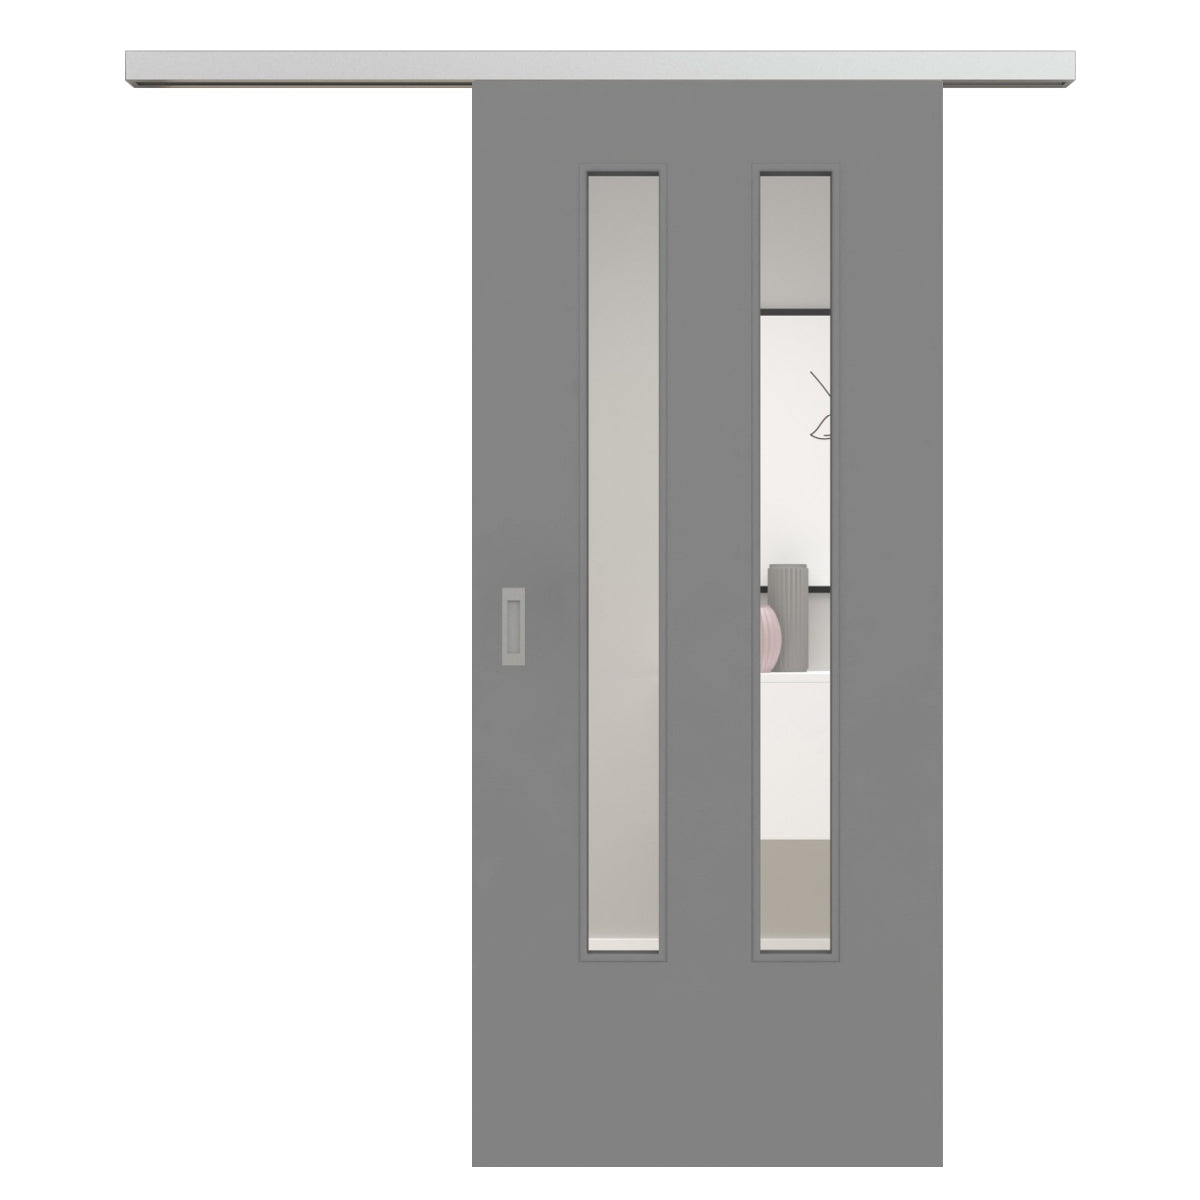 Schiebetür für Set mit Edelstahllaufkasten mit Lichtausschnitt vertikal grau glatt LA6